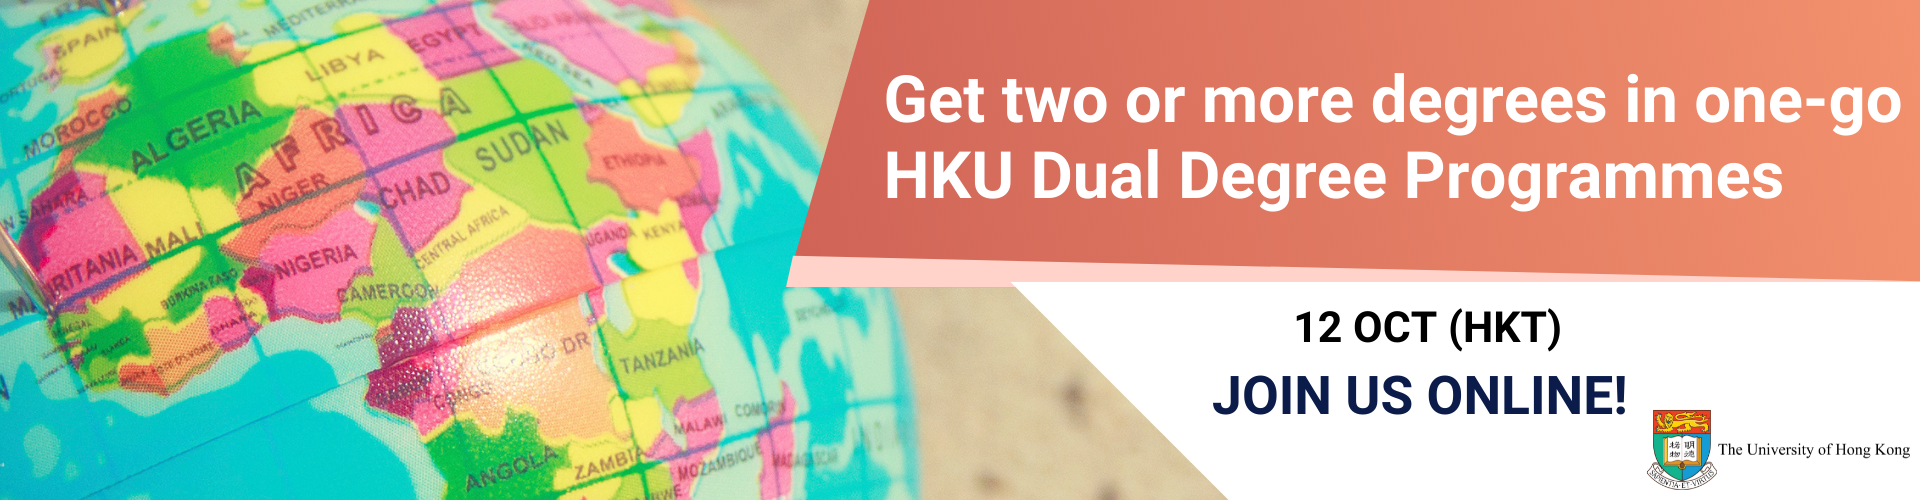 动画文本Get two or more degrees in one-go HKU Dual Degree Programmes 12 Oct (HKT) Join us online" with photo of the globe